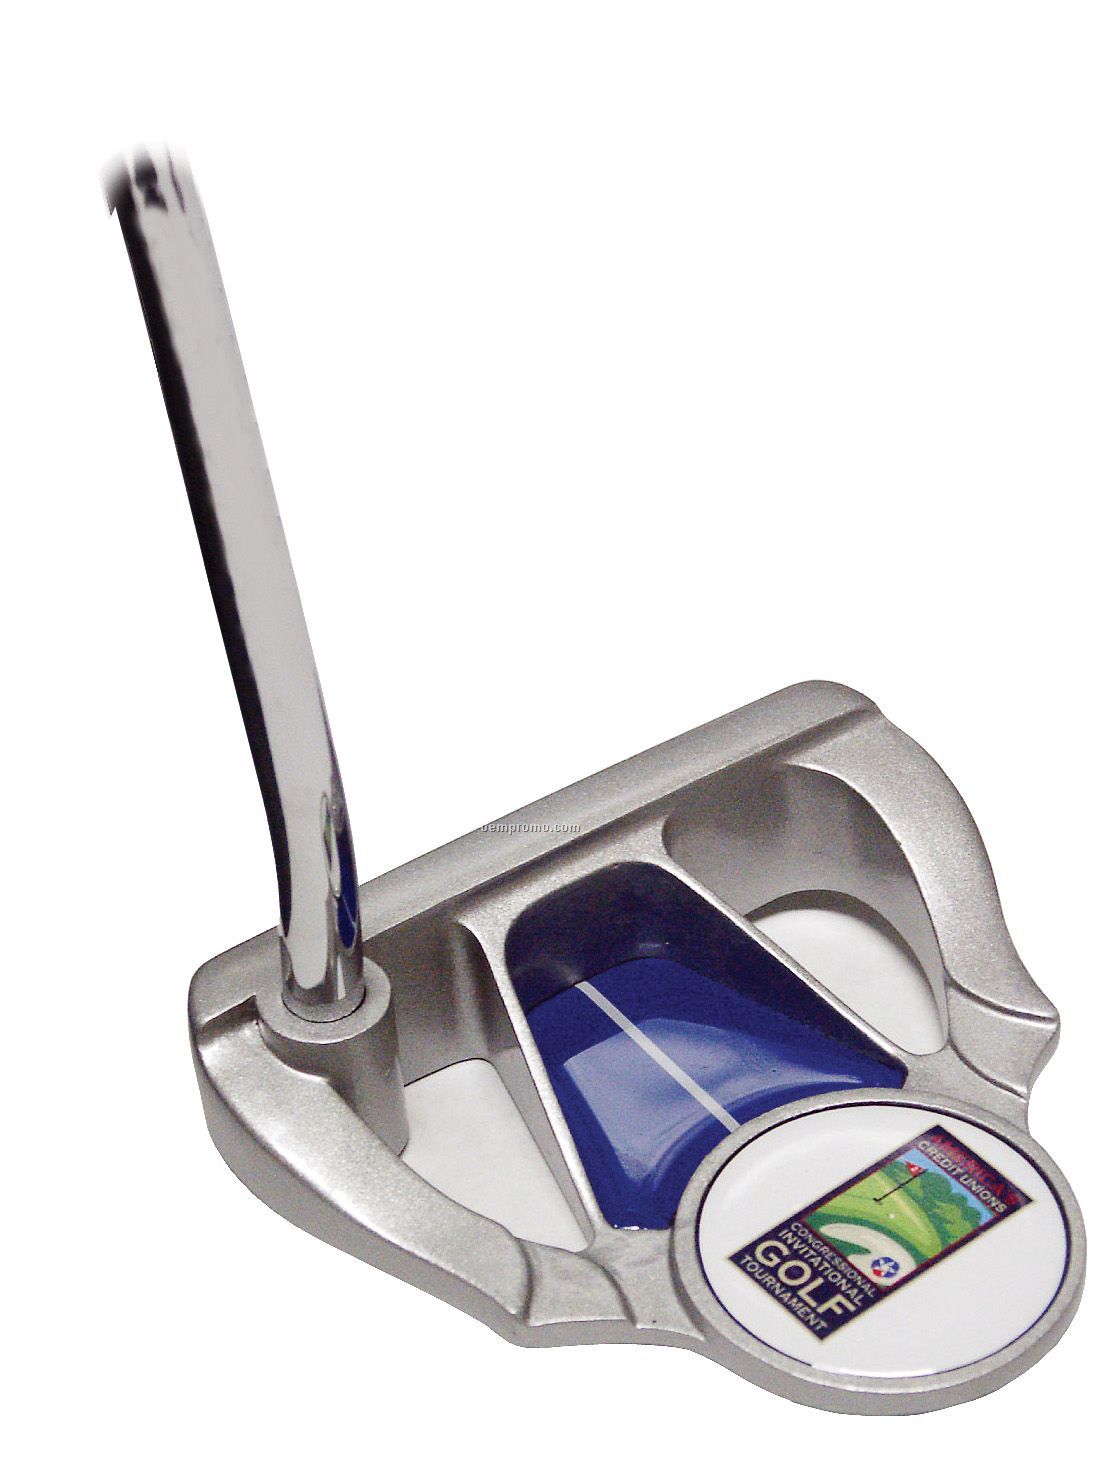 Raven P2g Golf Putter (1-4 Color Logo)